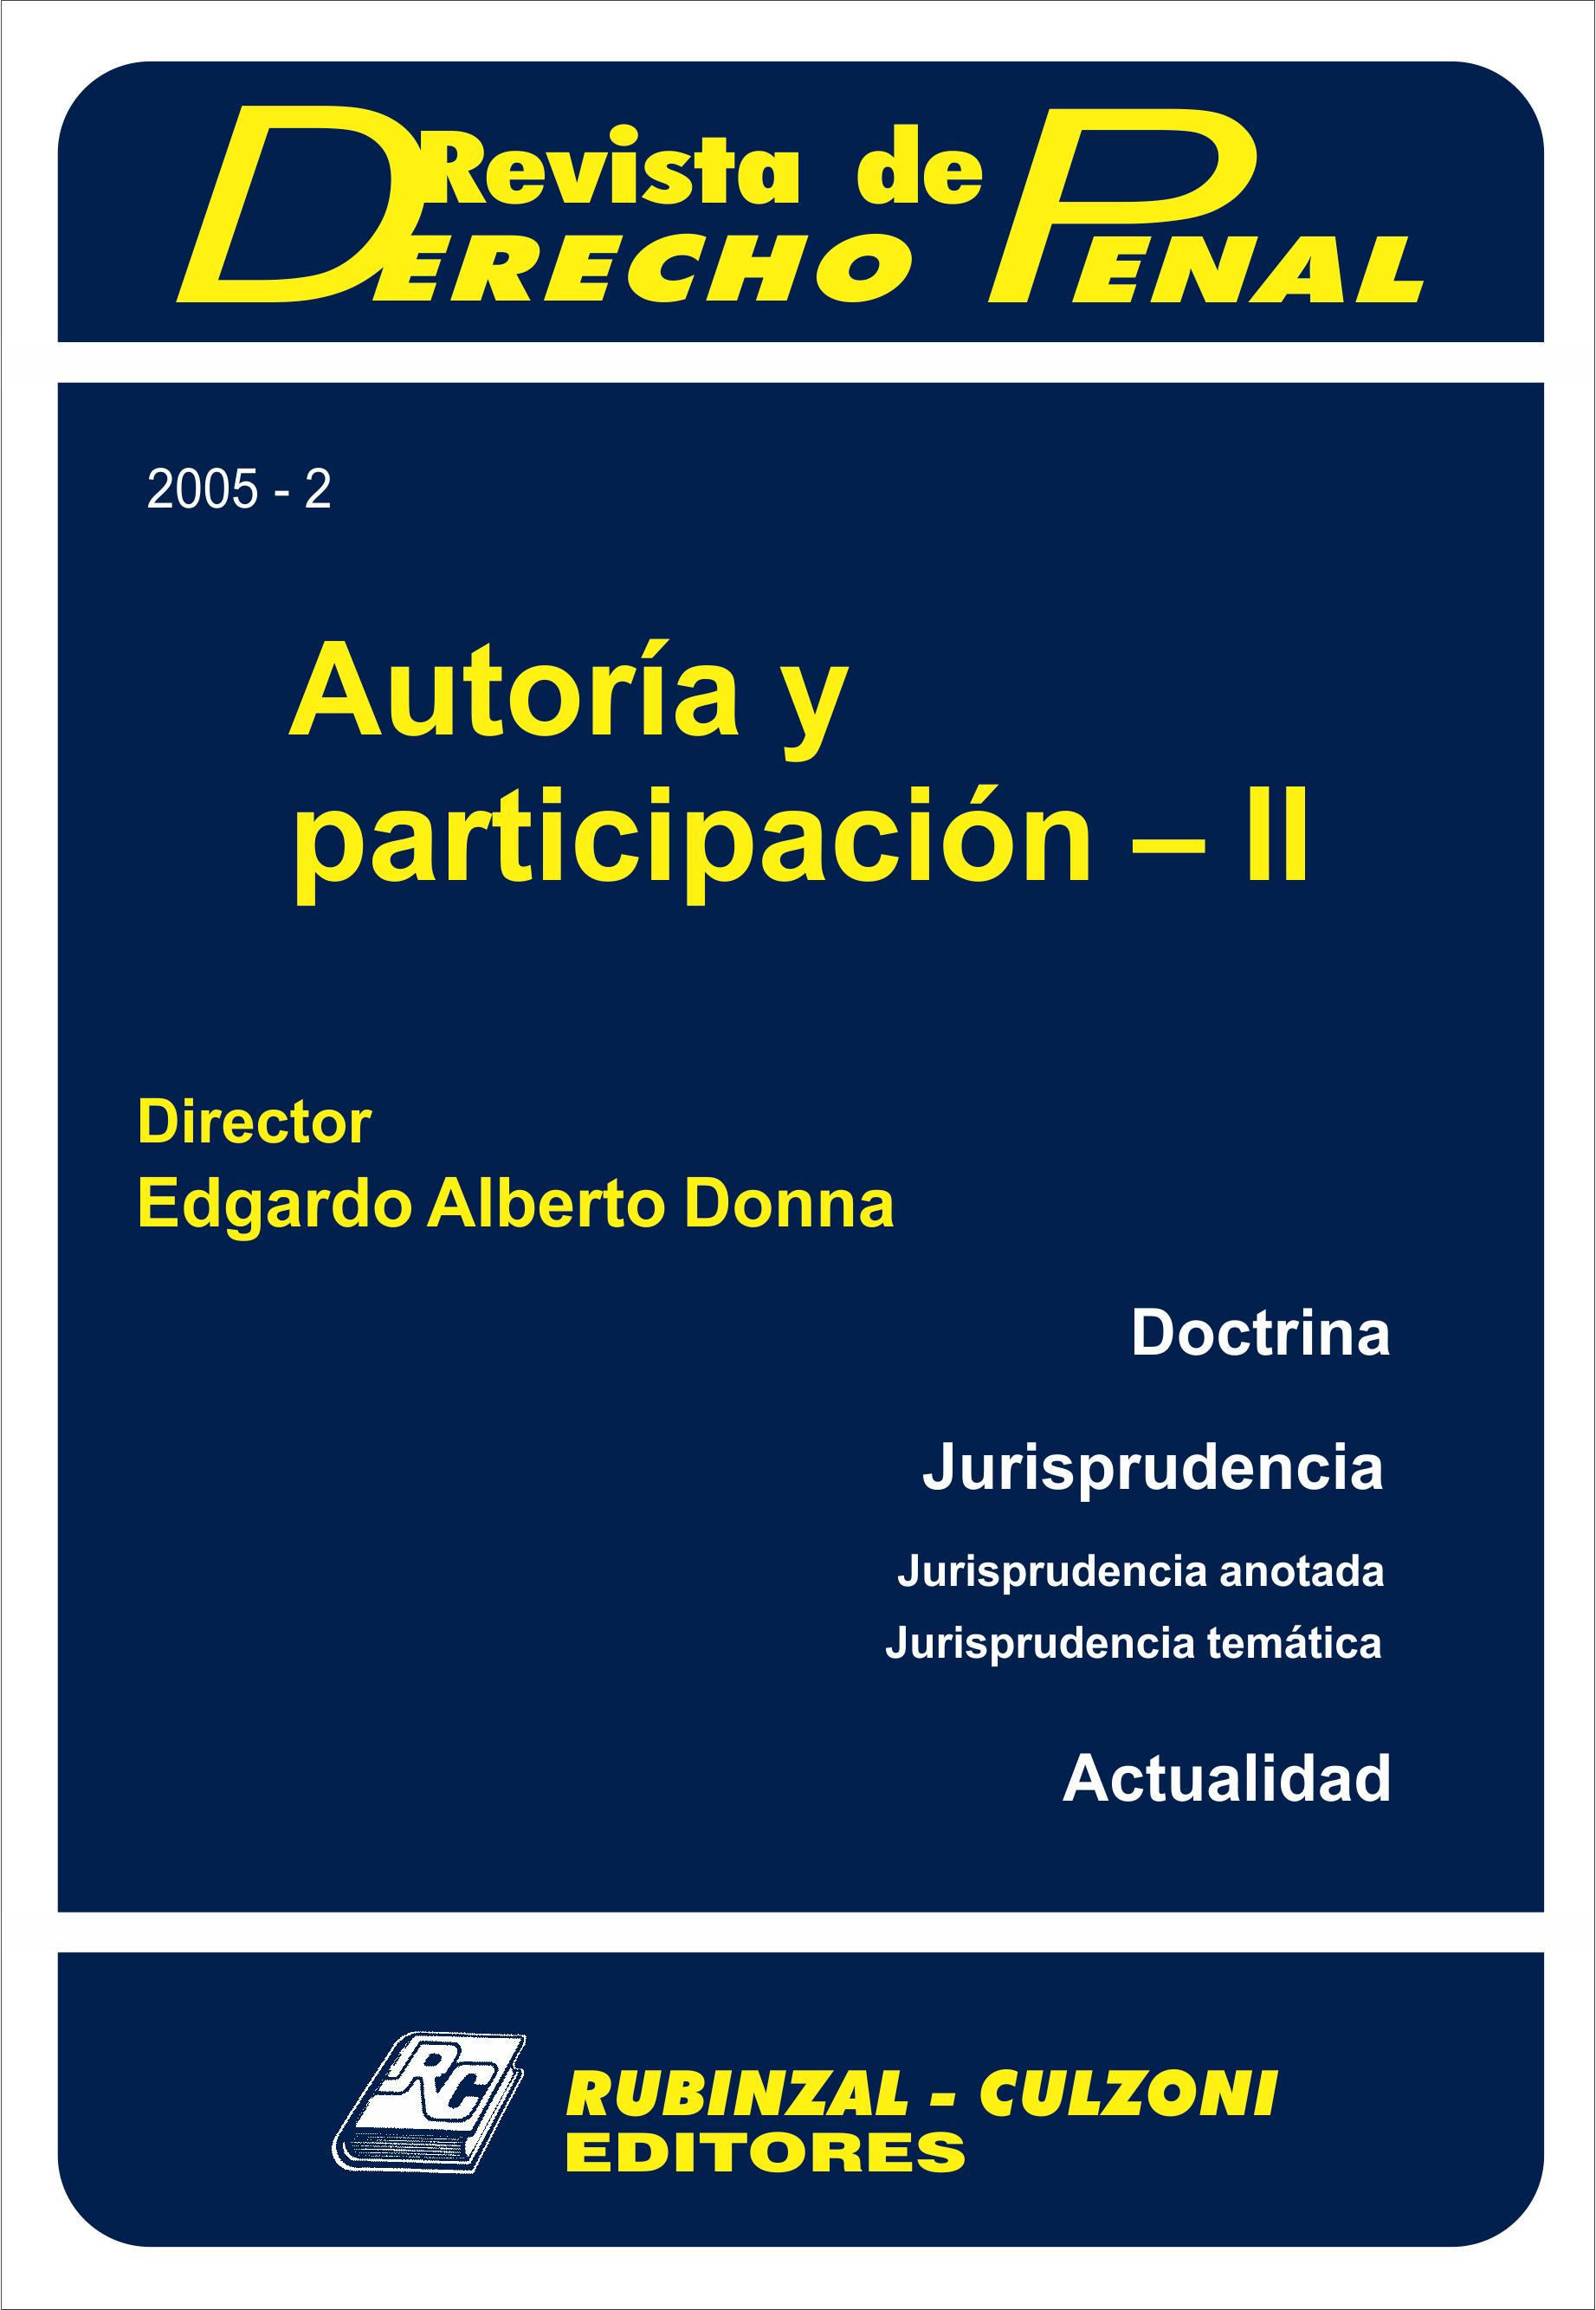 Revista de Derecho Penal - Autoría y participación - II. [2005-2]